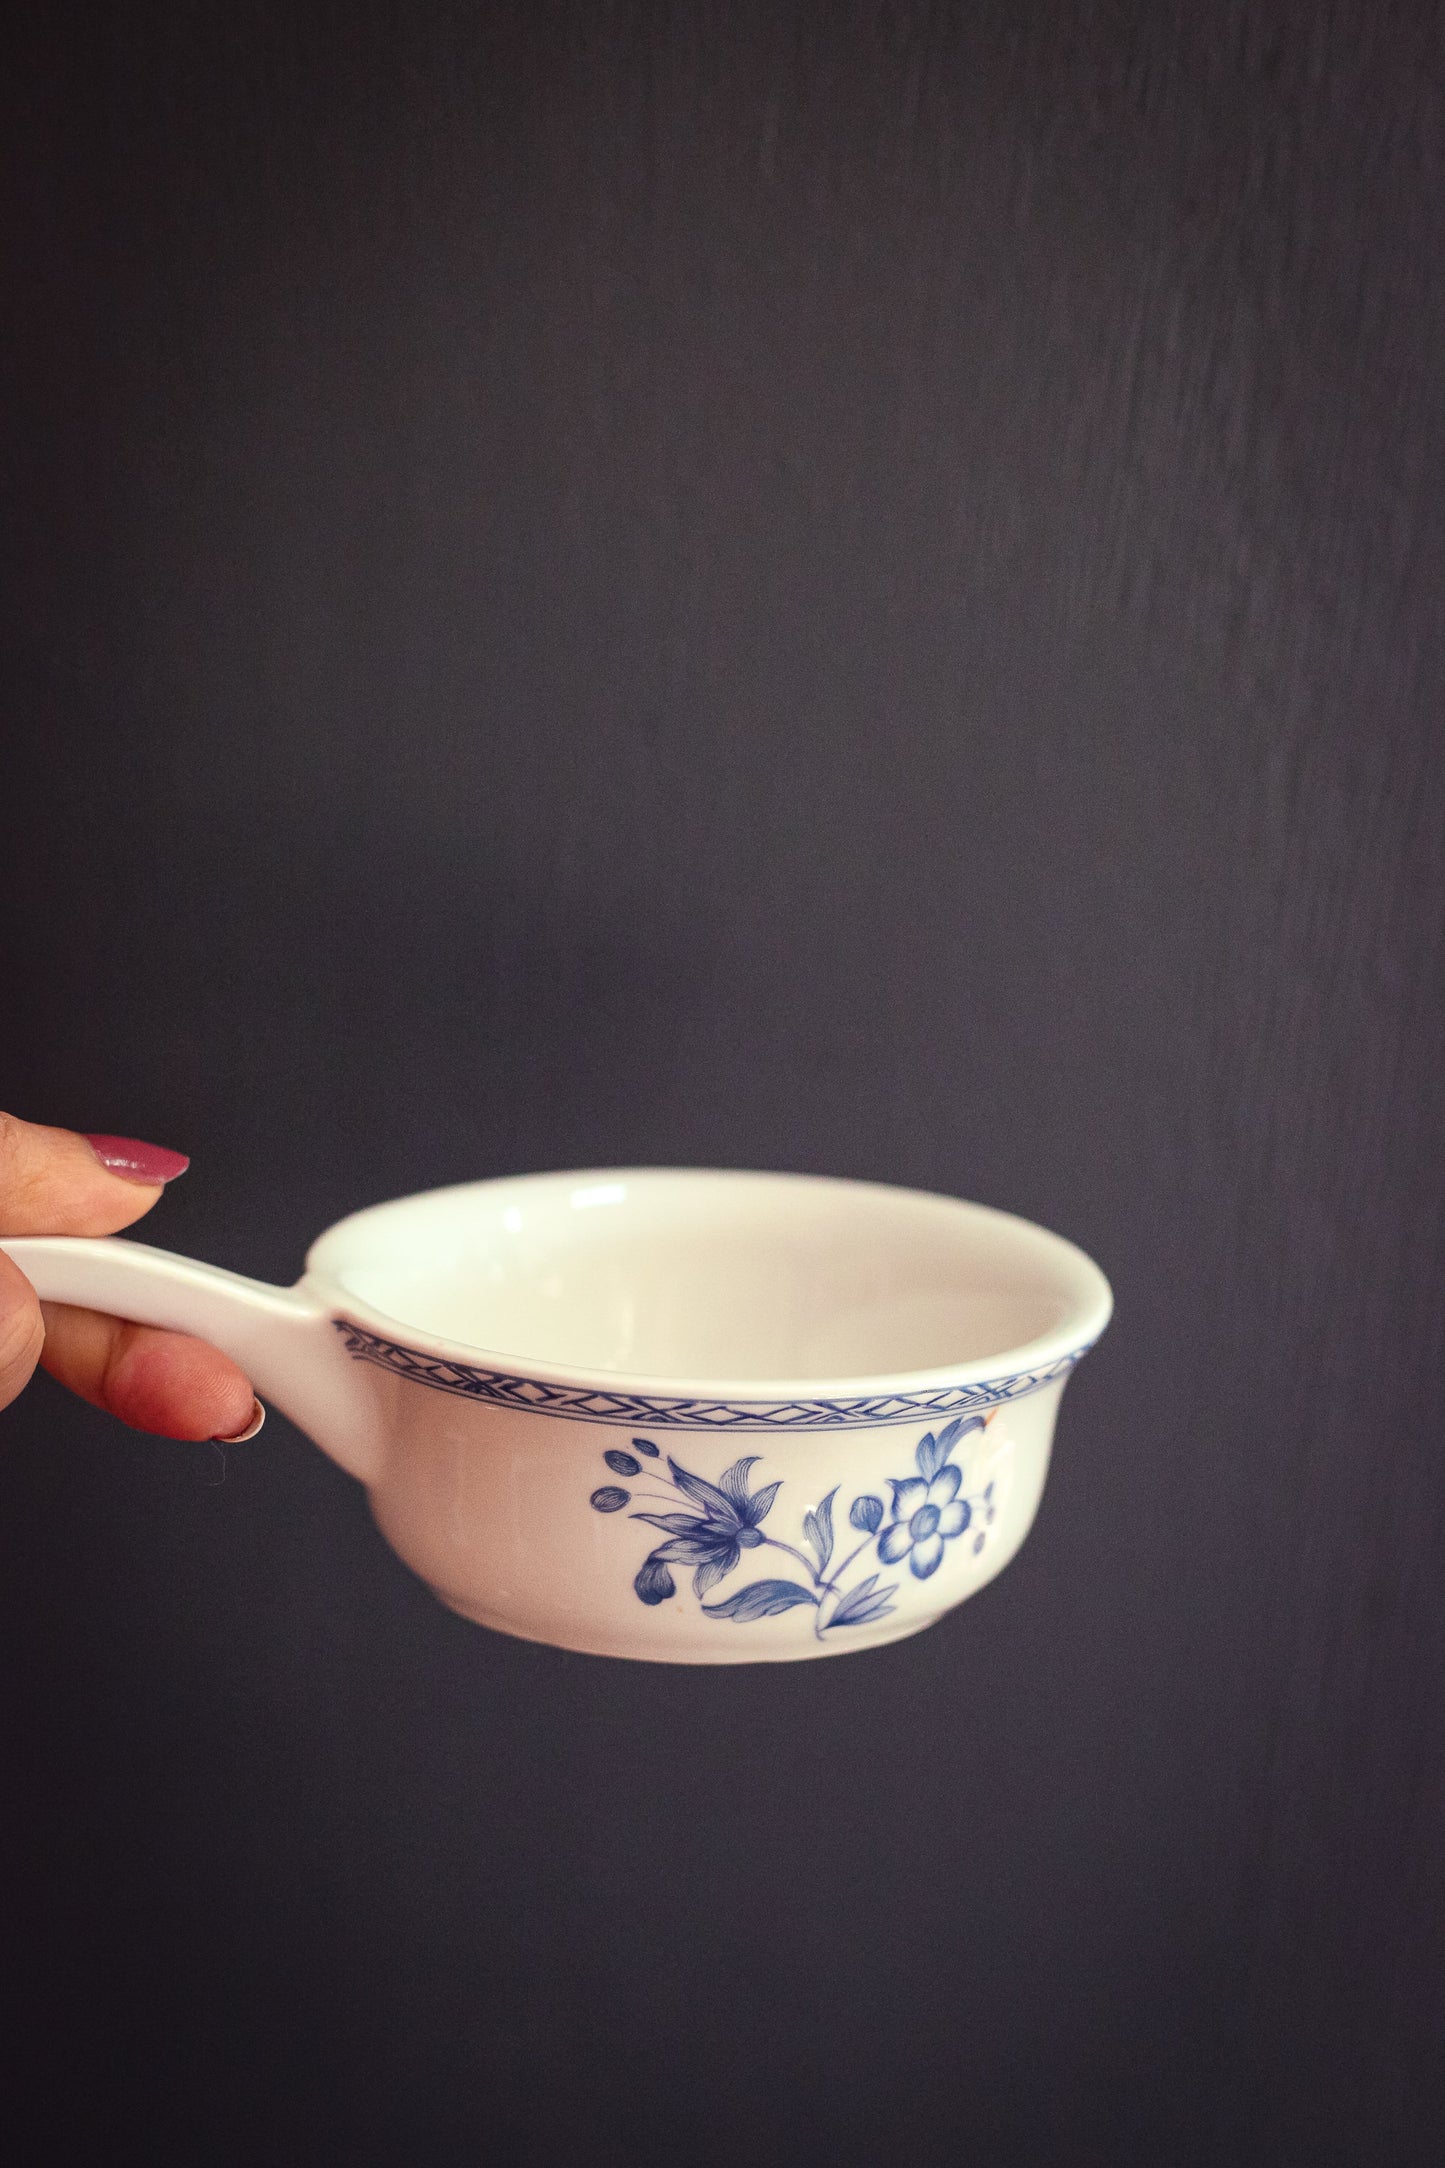 Blue & White Ceramic Serving Cup with Handle - Porcelaine de Paris Bowl with Handle